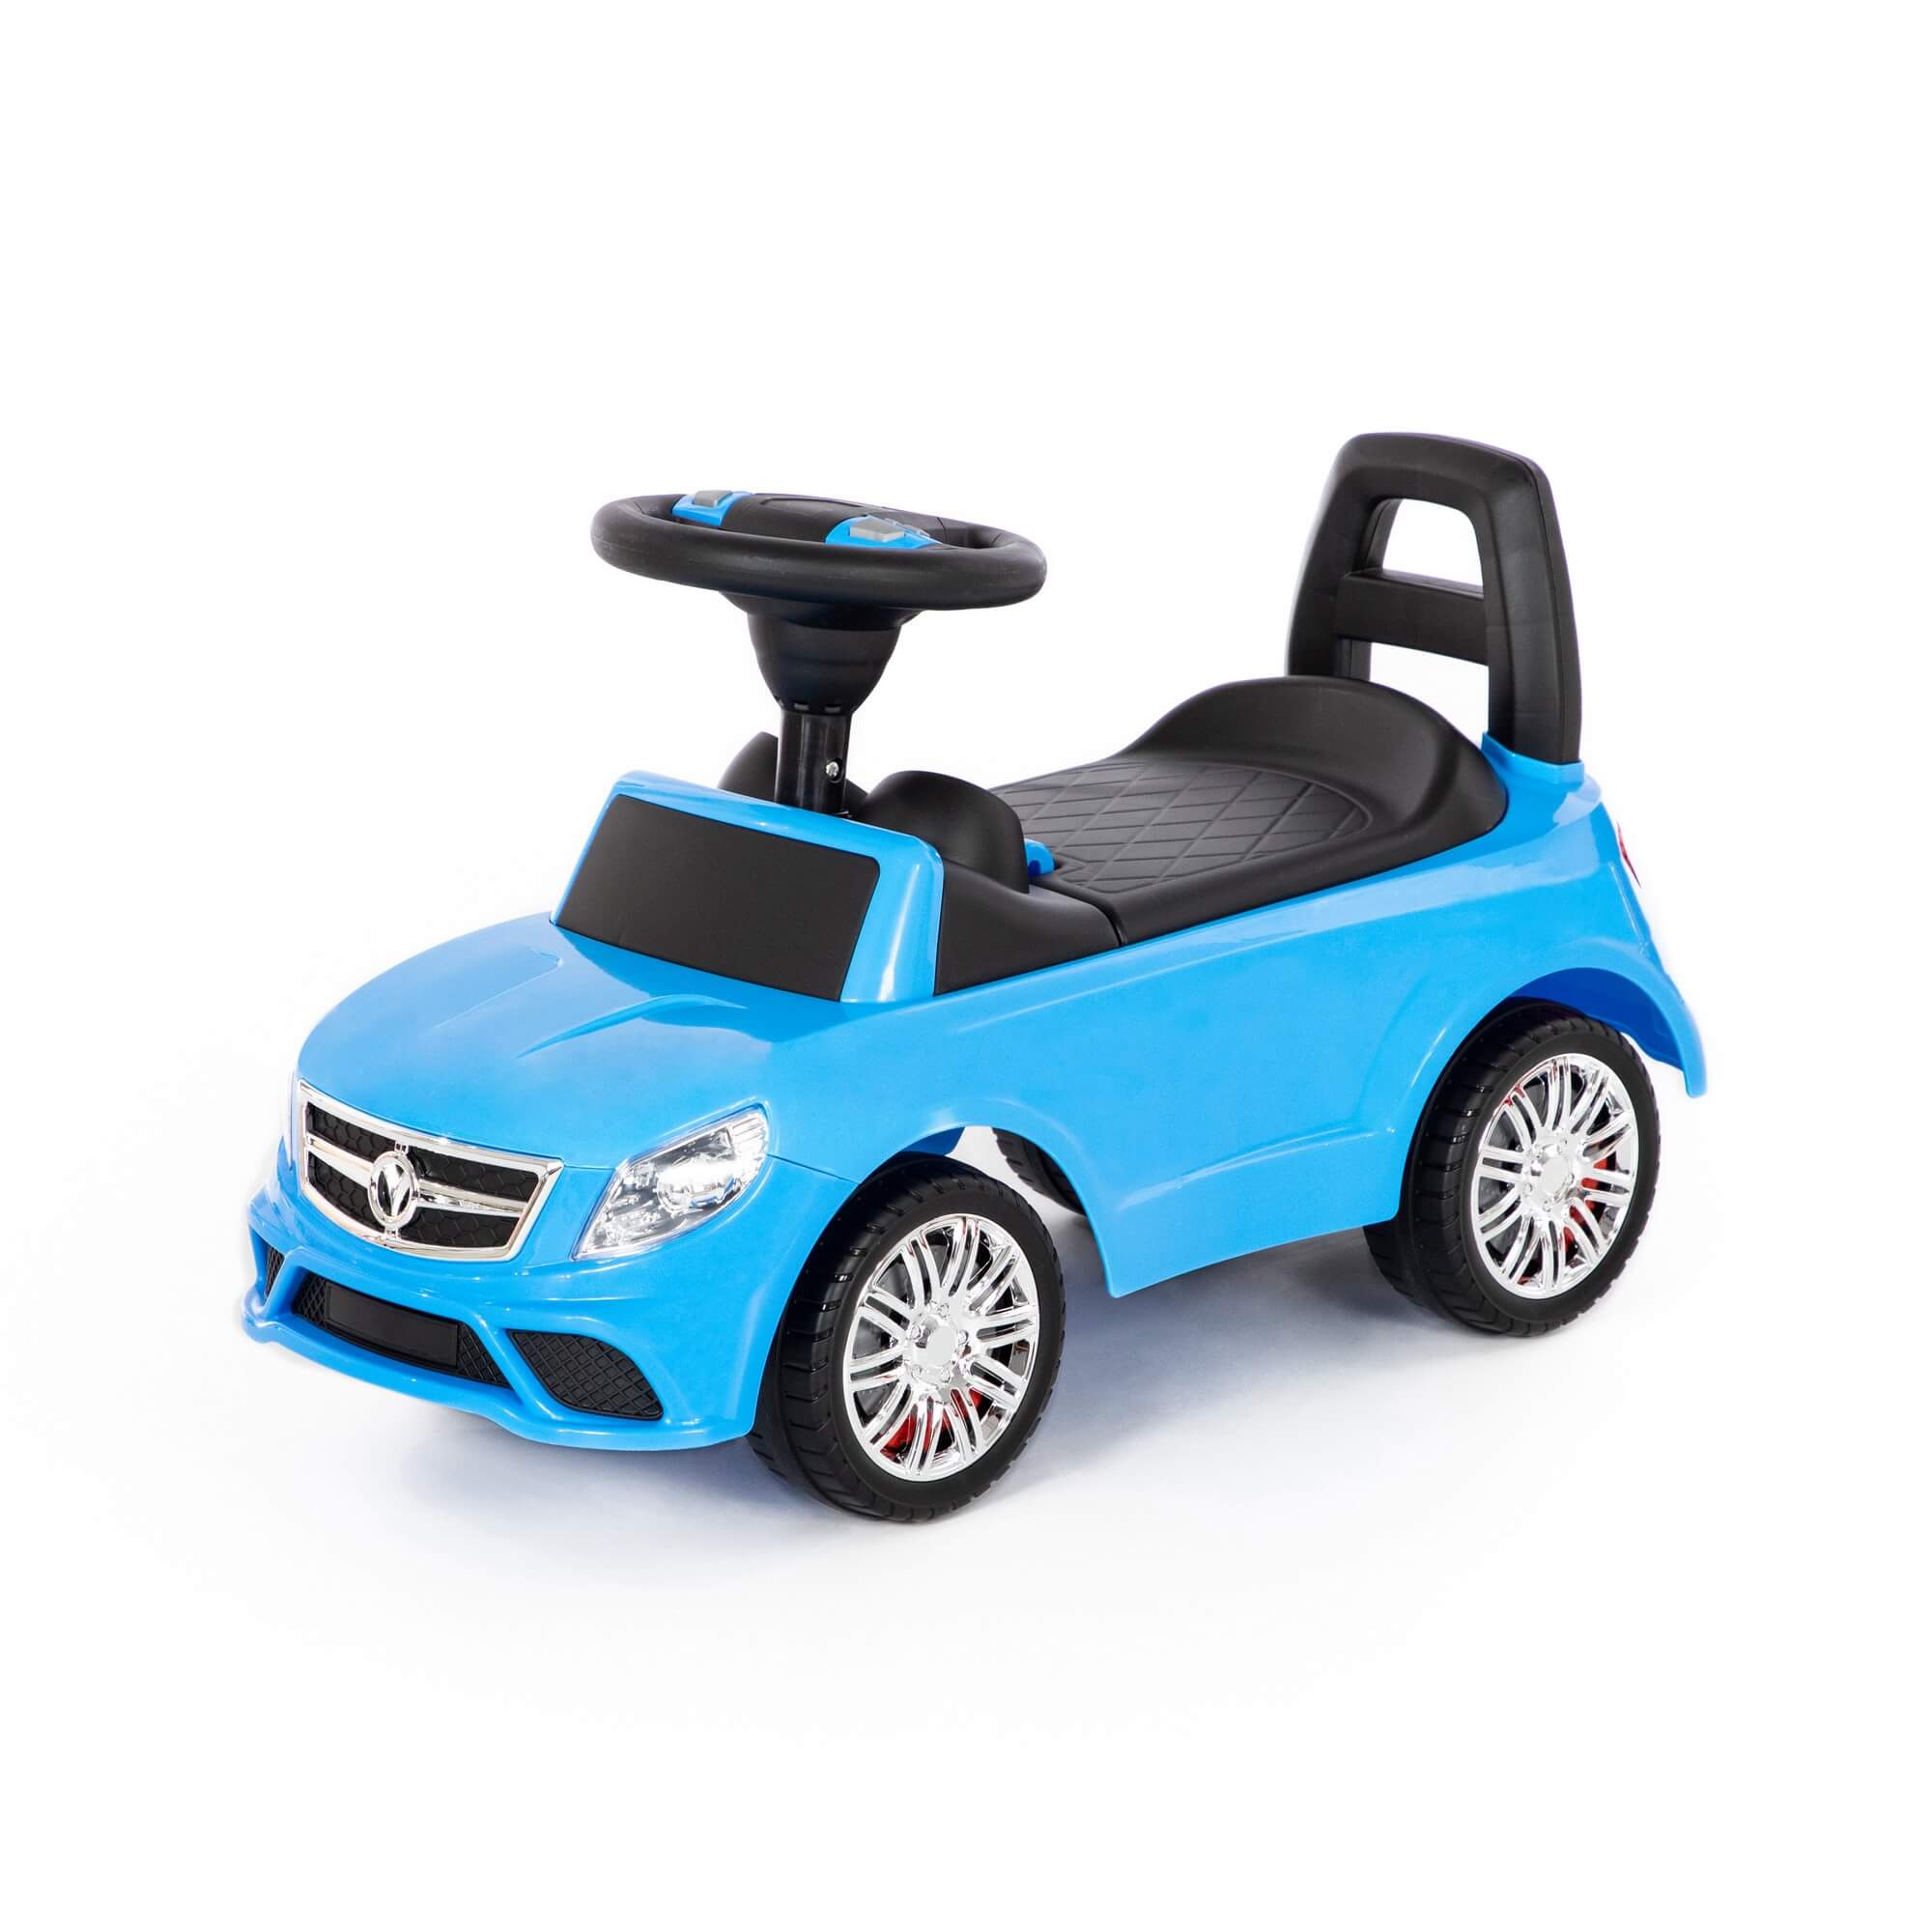 Каталка-автомобиль SuperCar №3 со звуковым сигналом, цвет голубой Полесье 84484 каталка полесье автомобиль supercar 5 со звуковым сигналом